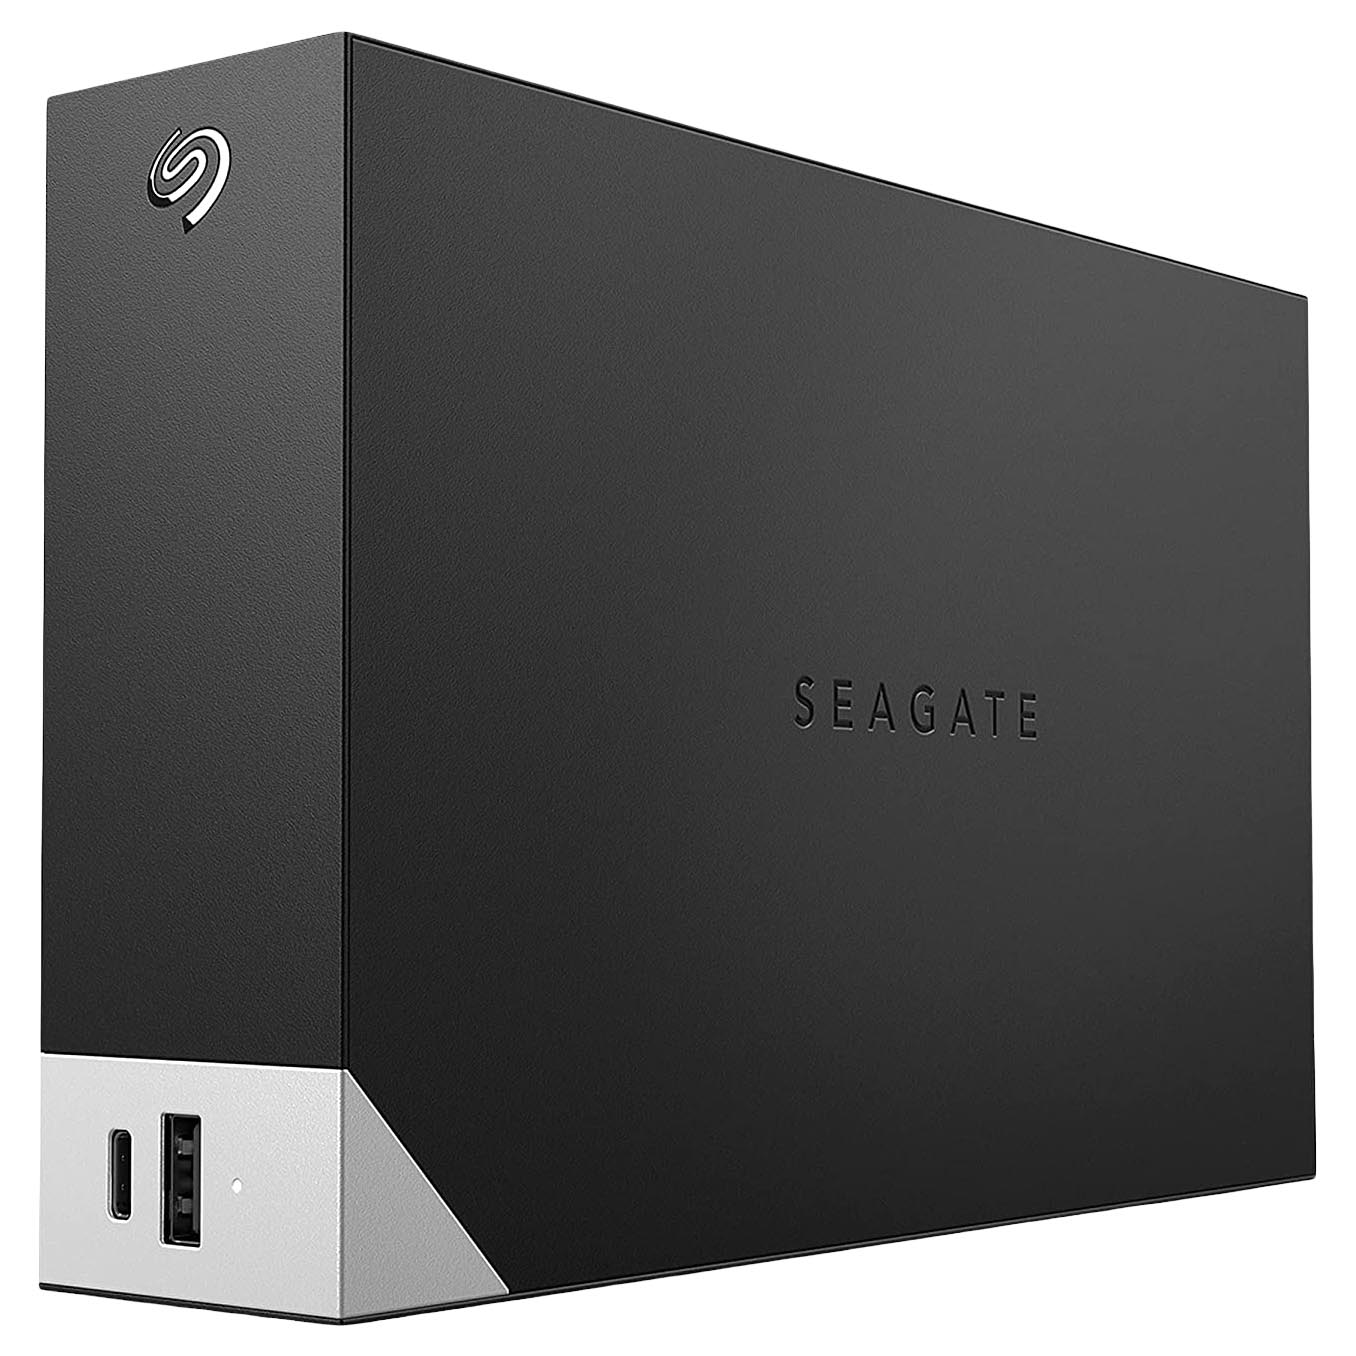 Внешний жесткий диск Seagate One Touch, STLC14000400, 14Тб, 3.5 внешний жесткий диск 2 5 5 tb usb 3 0 seagate one touch stkc5000400 черный